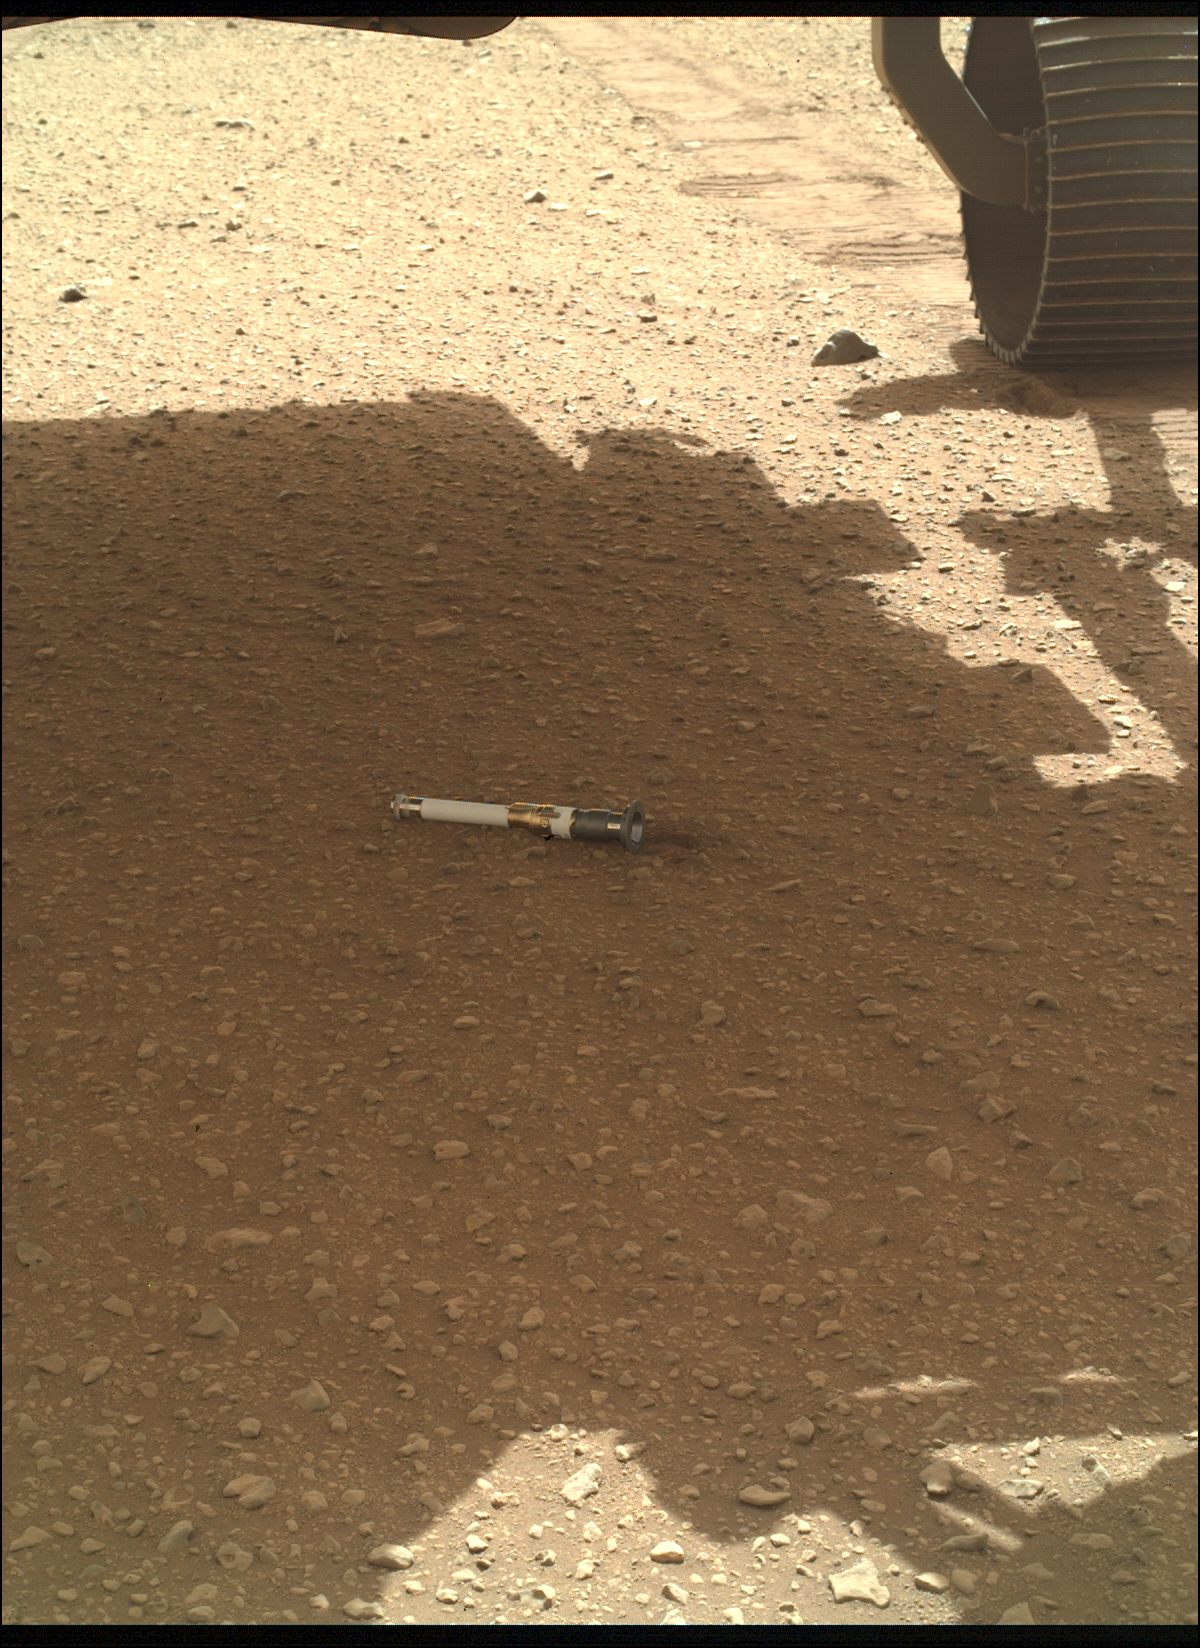 Marssand mit einer Röhre an der Spitze.  Rover-Räder sind gerade in Sichtweite